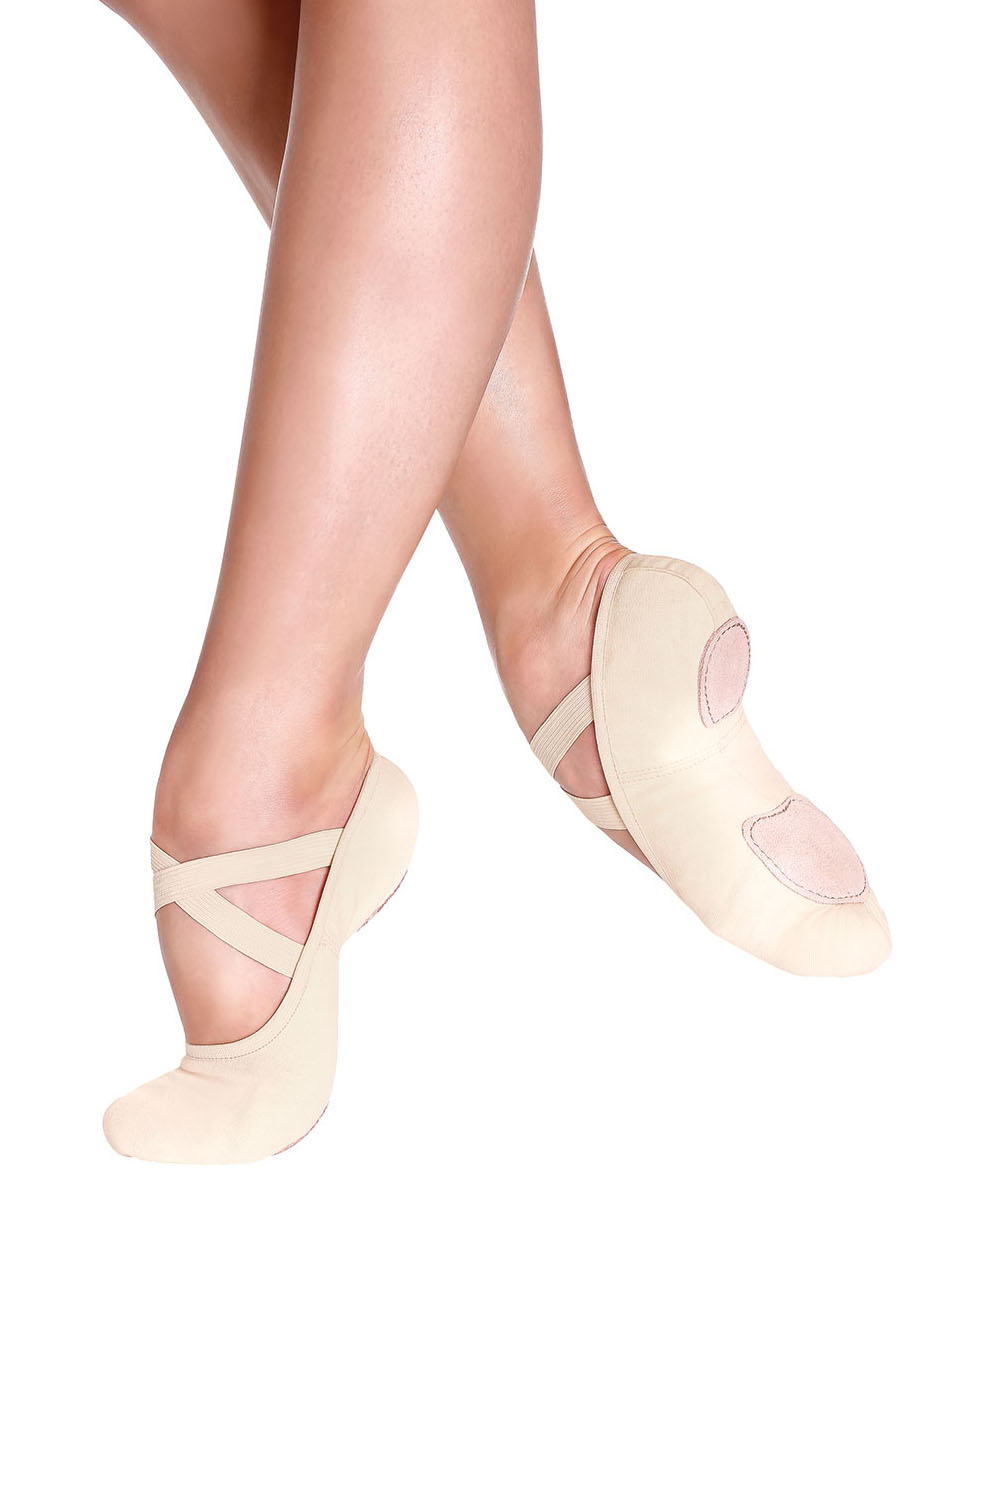 Puntas de ballet y tecnología - La tecnología también avanza en zapatillas